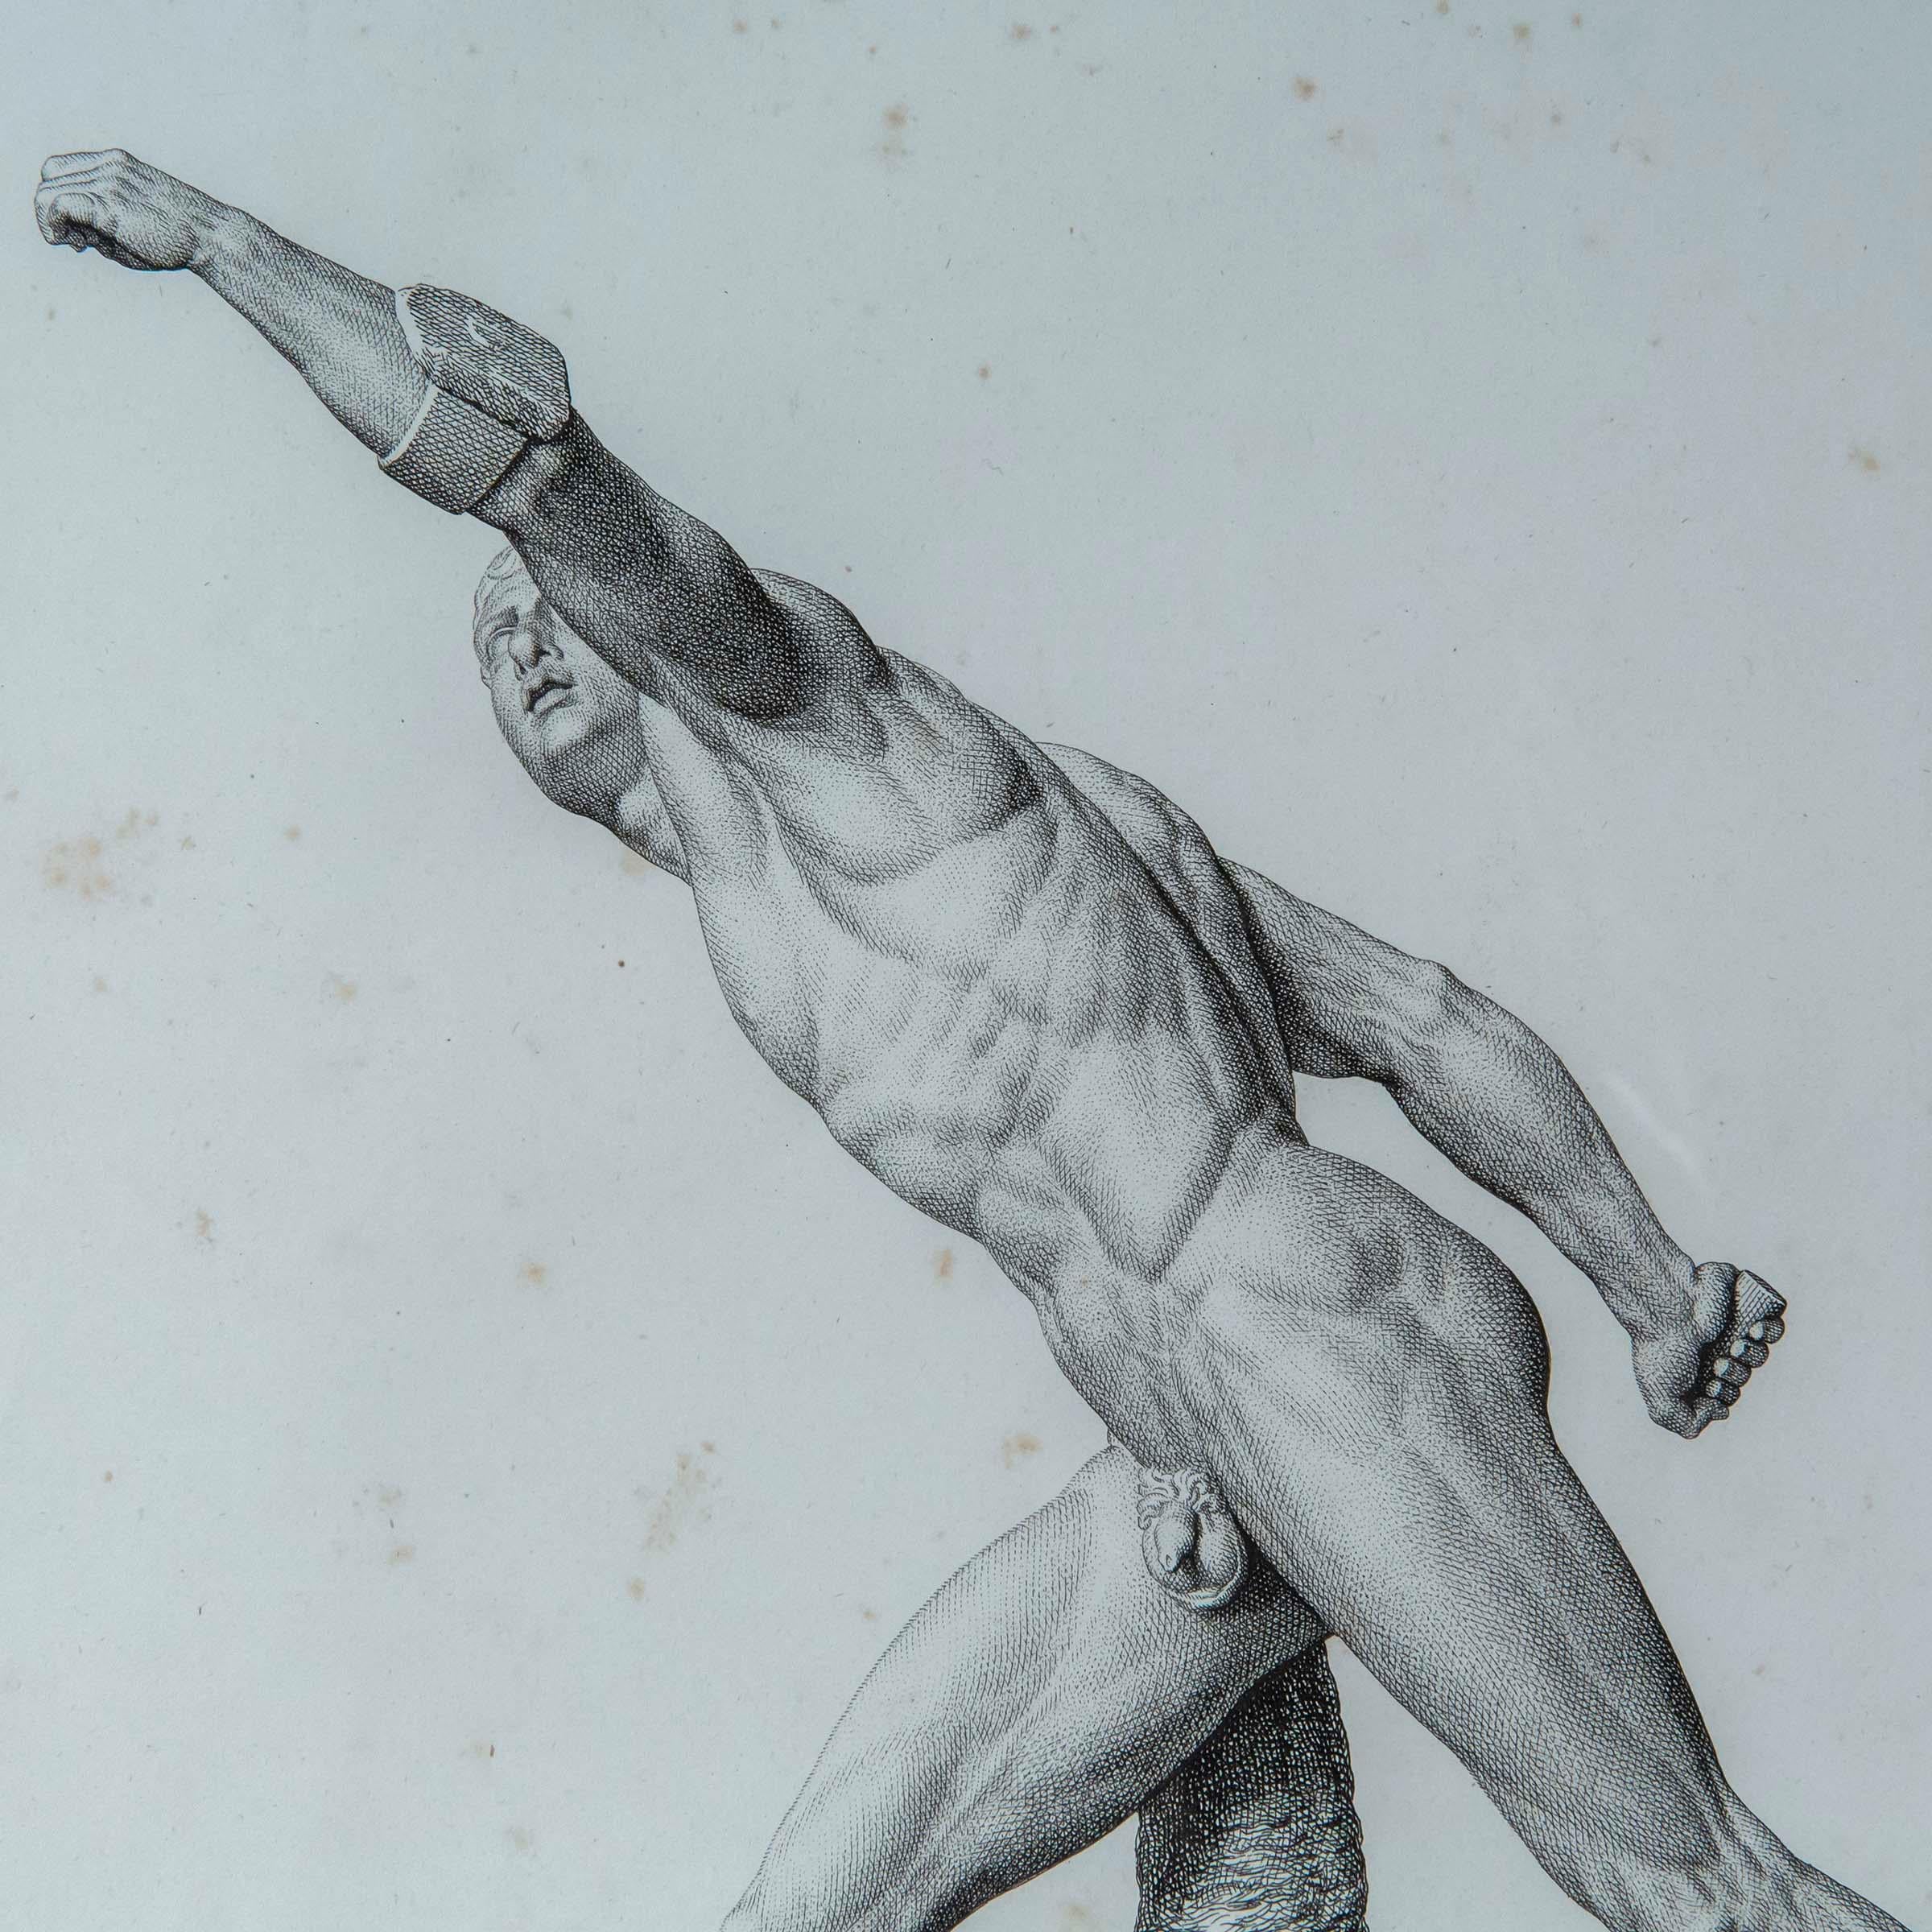 Deux exquises et rares gravures de sculptures antiques par Pierre Bouillon (1776-1831), tirées de son livre Musée des antiques, publié à Paris entre 1811 et 1827. Les deux planches, intitulées Gladiateur Borghese et Achille, représentent les statues